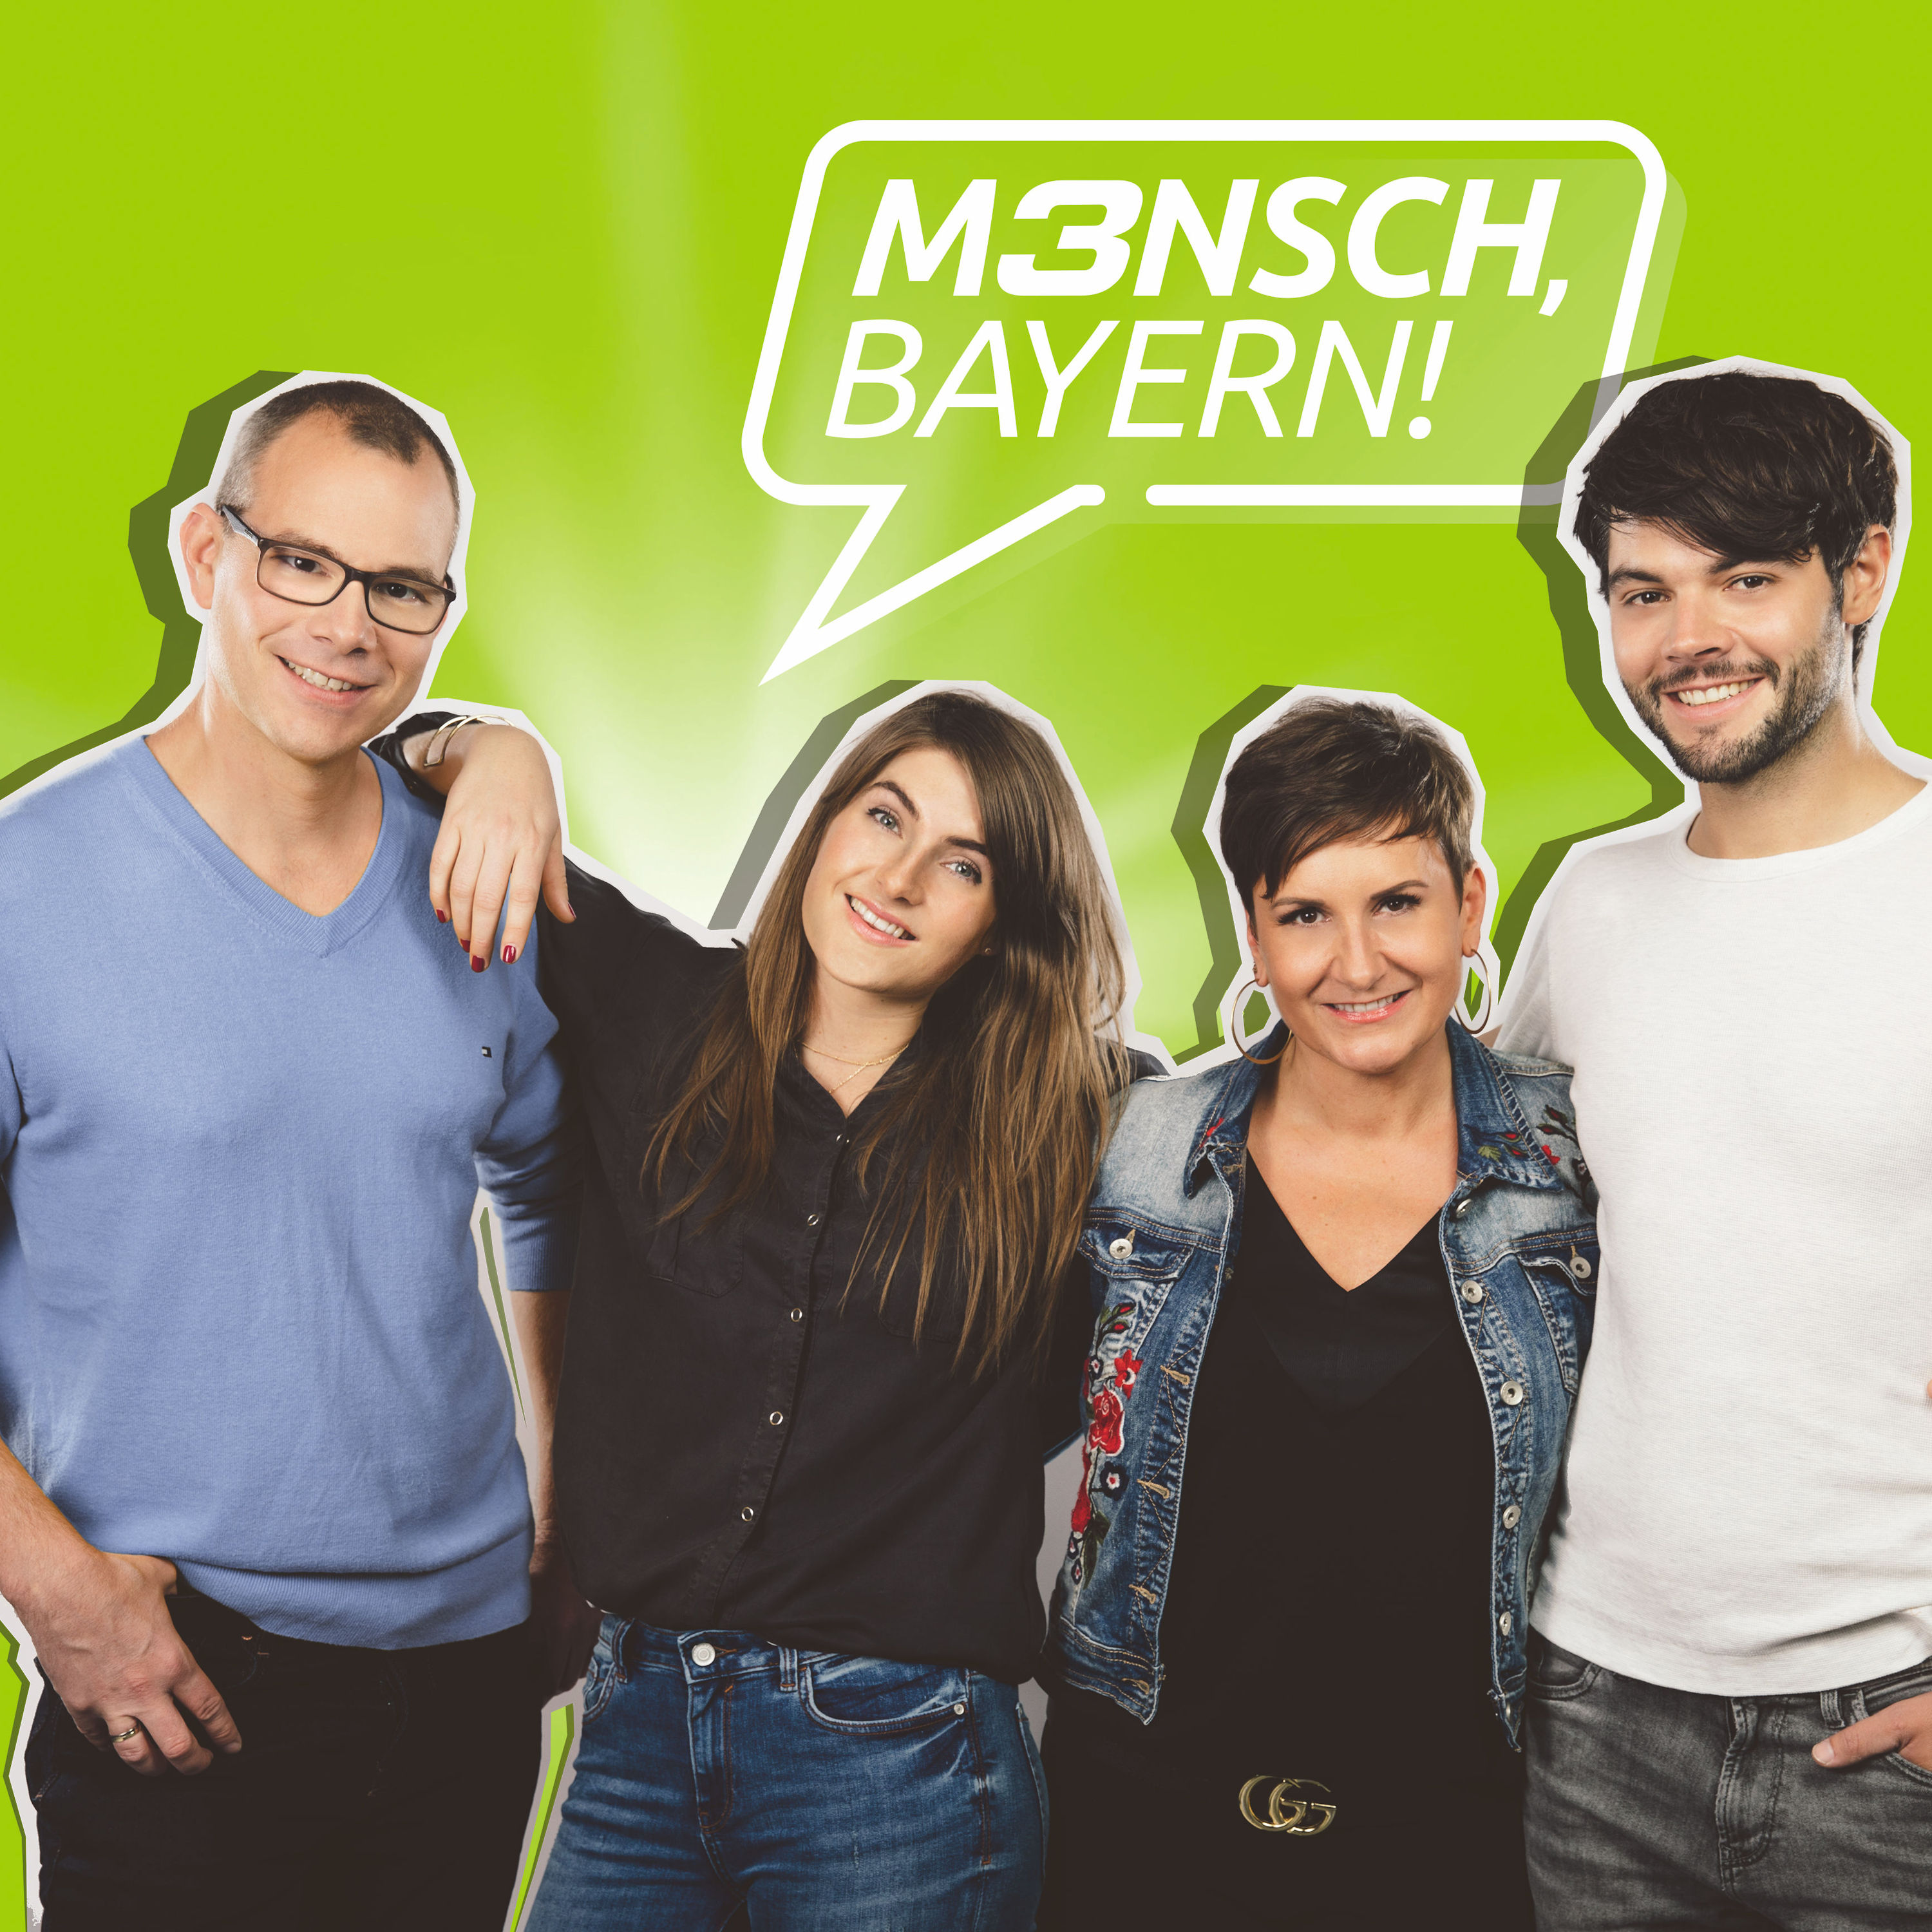 BAYERN 3 "Mensch, Bayern!"